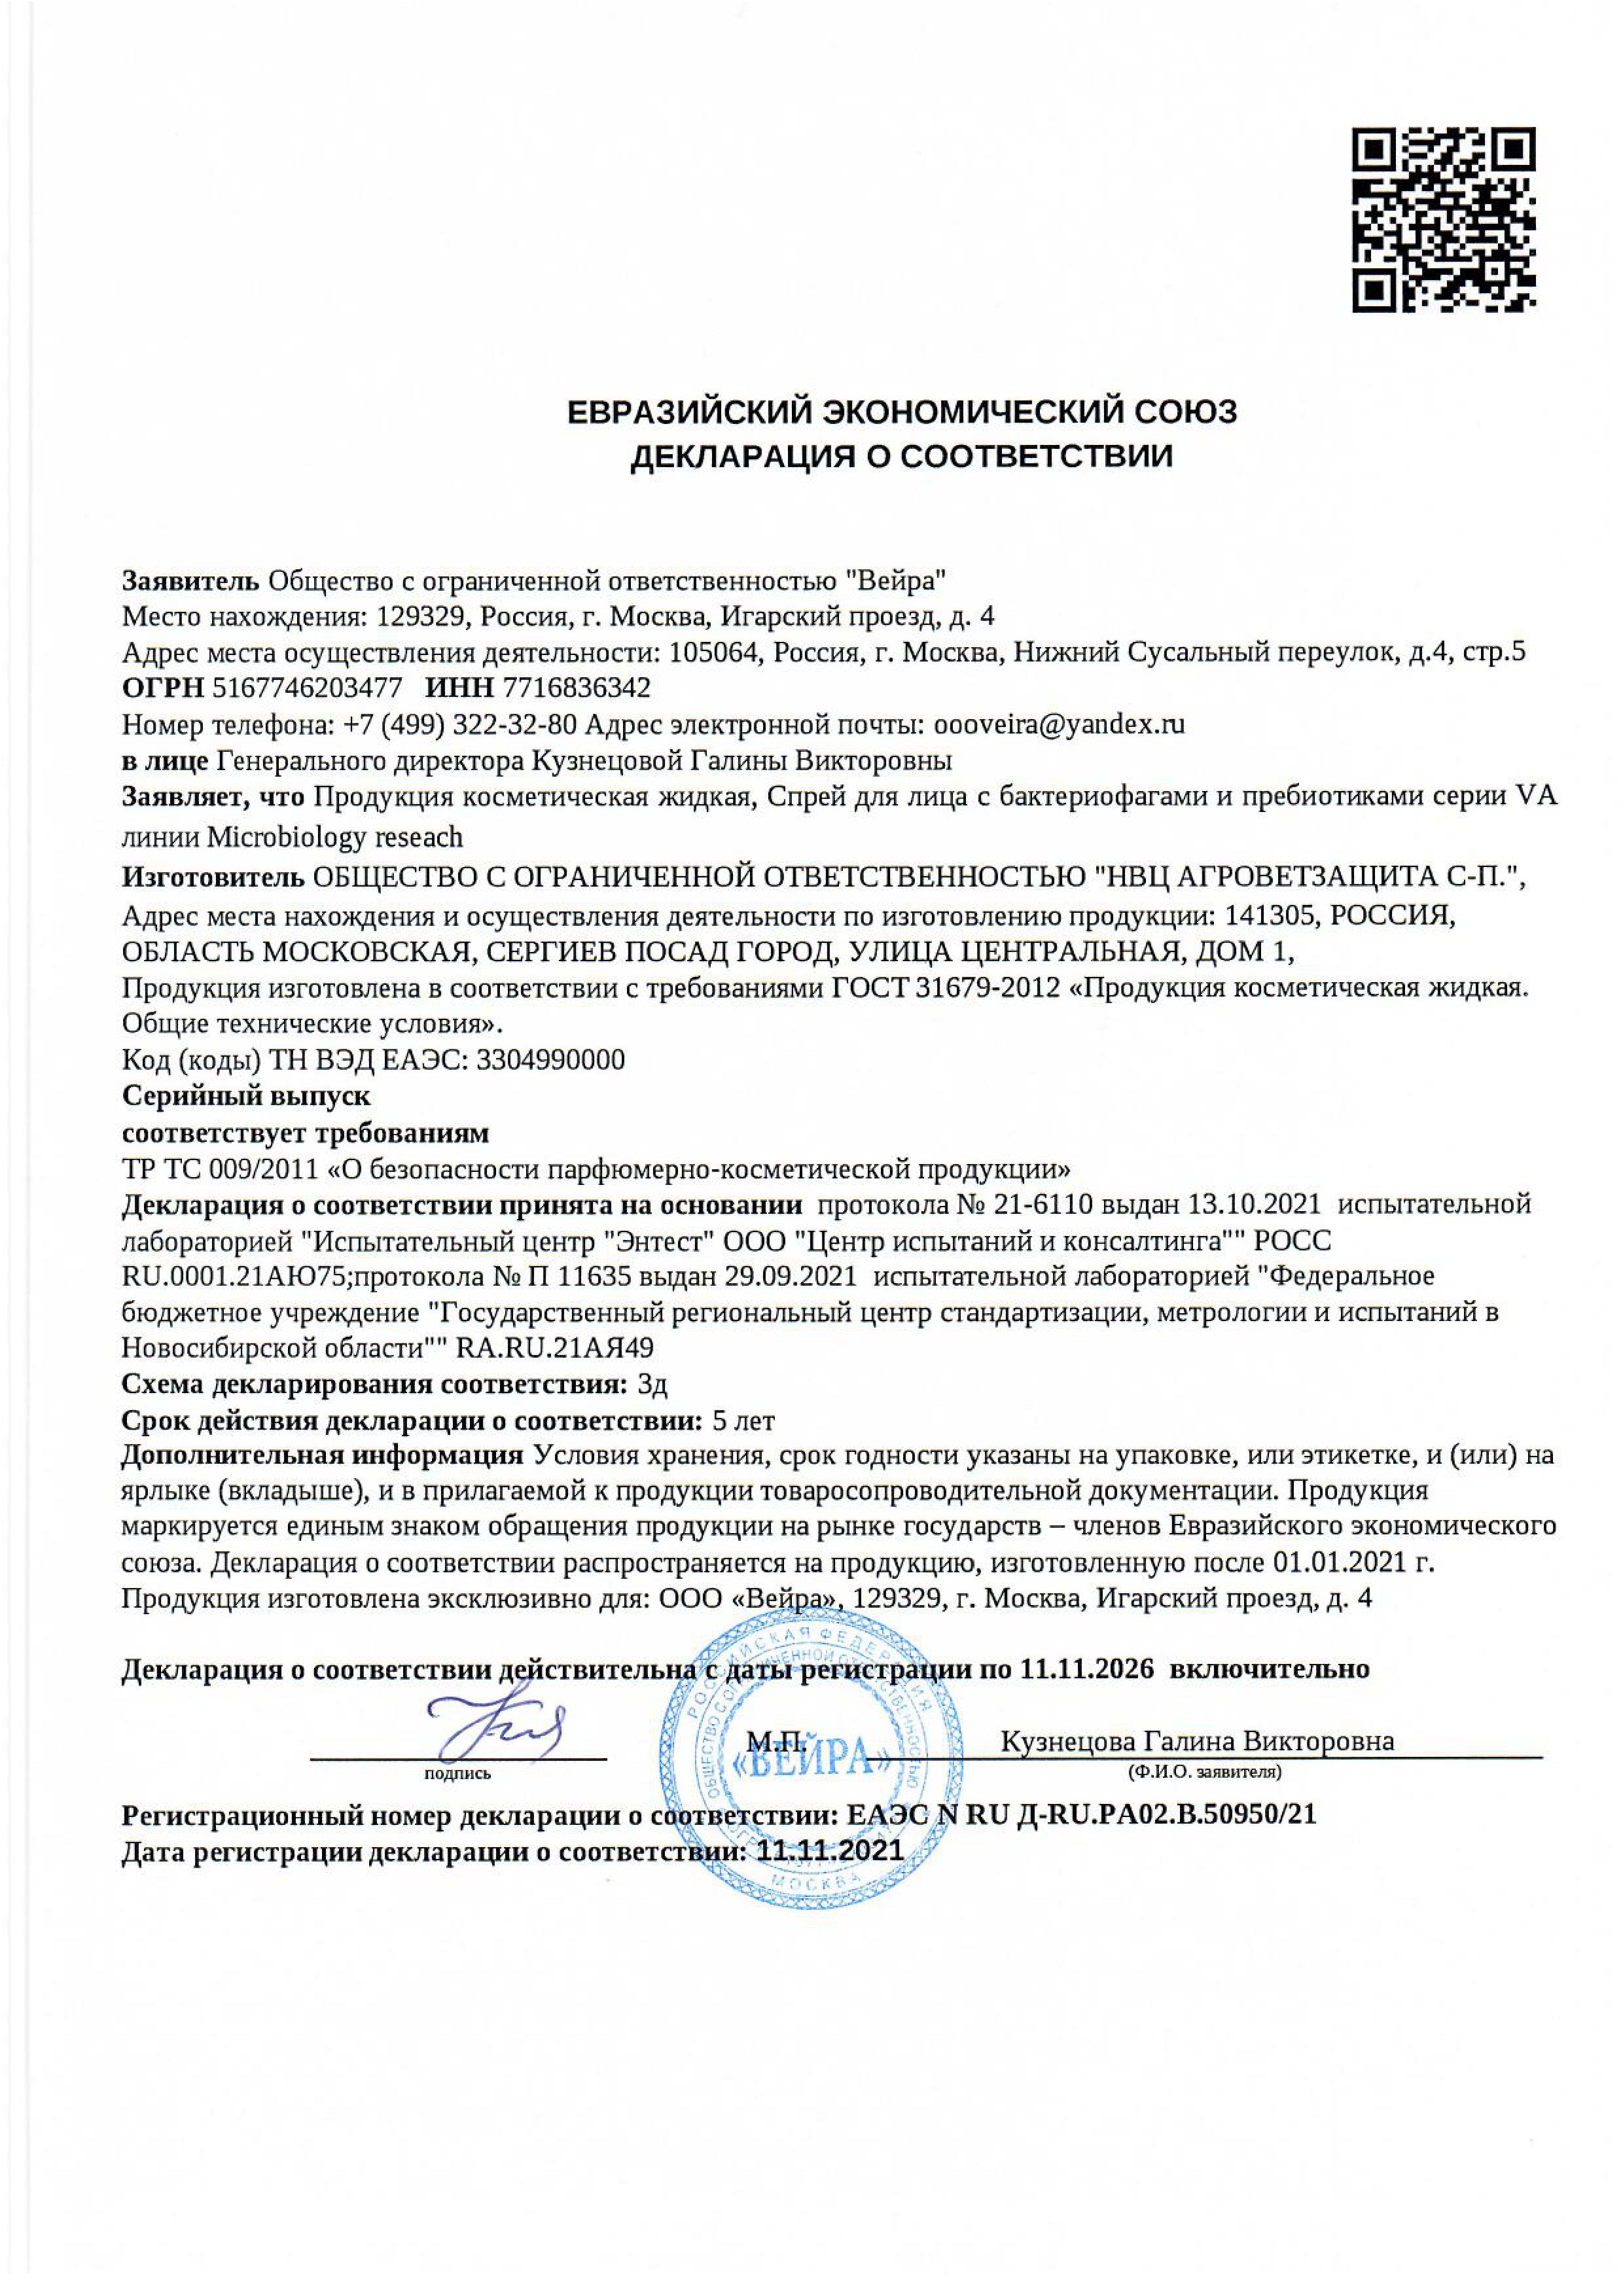 картинка Спрей для лица с бактериофагами и пребиотиками, 50 мл от магазина Панацея в Красноярске